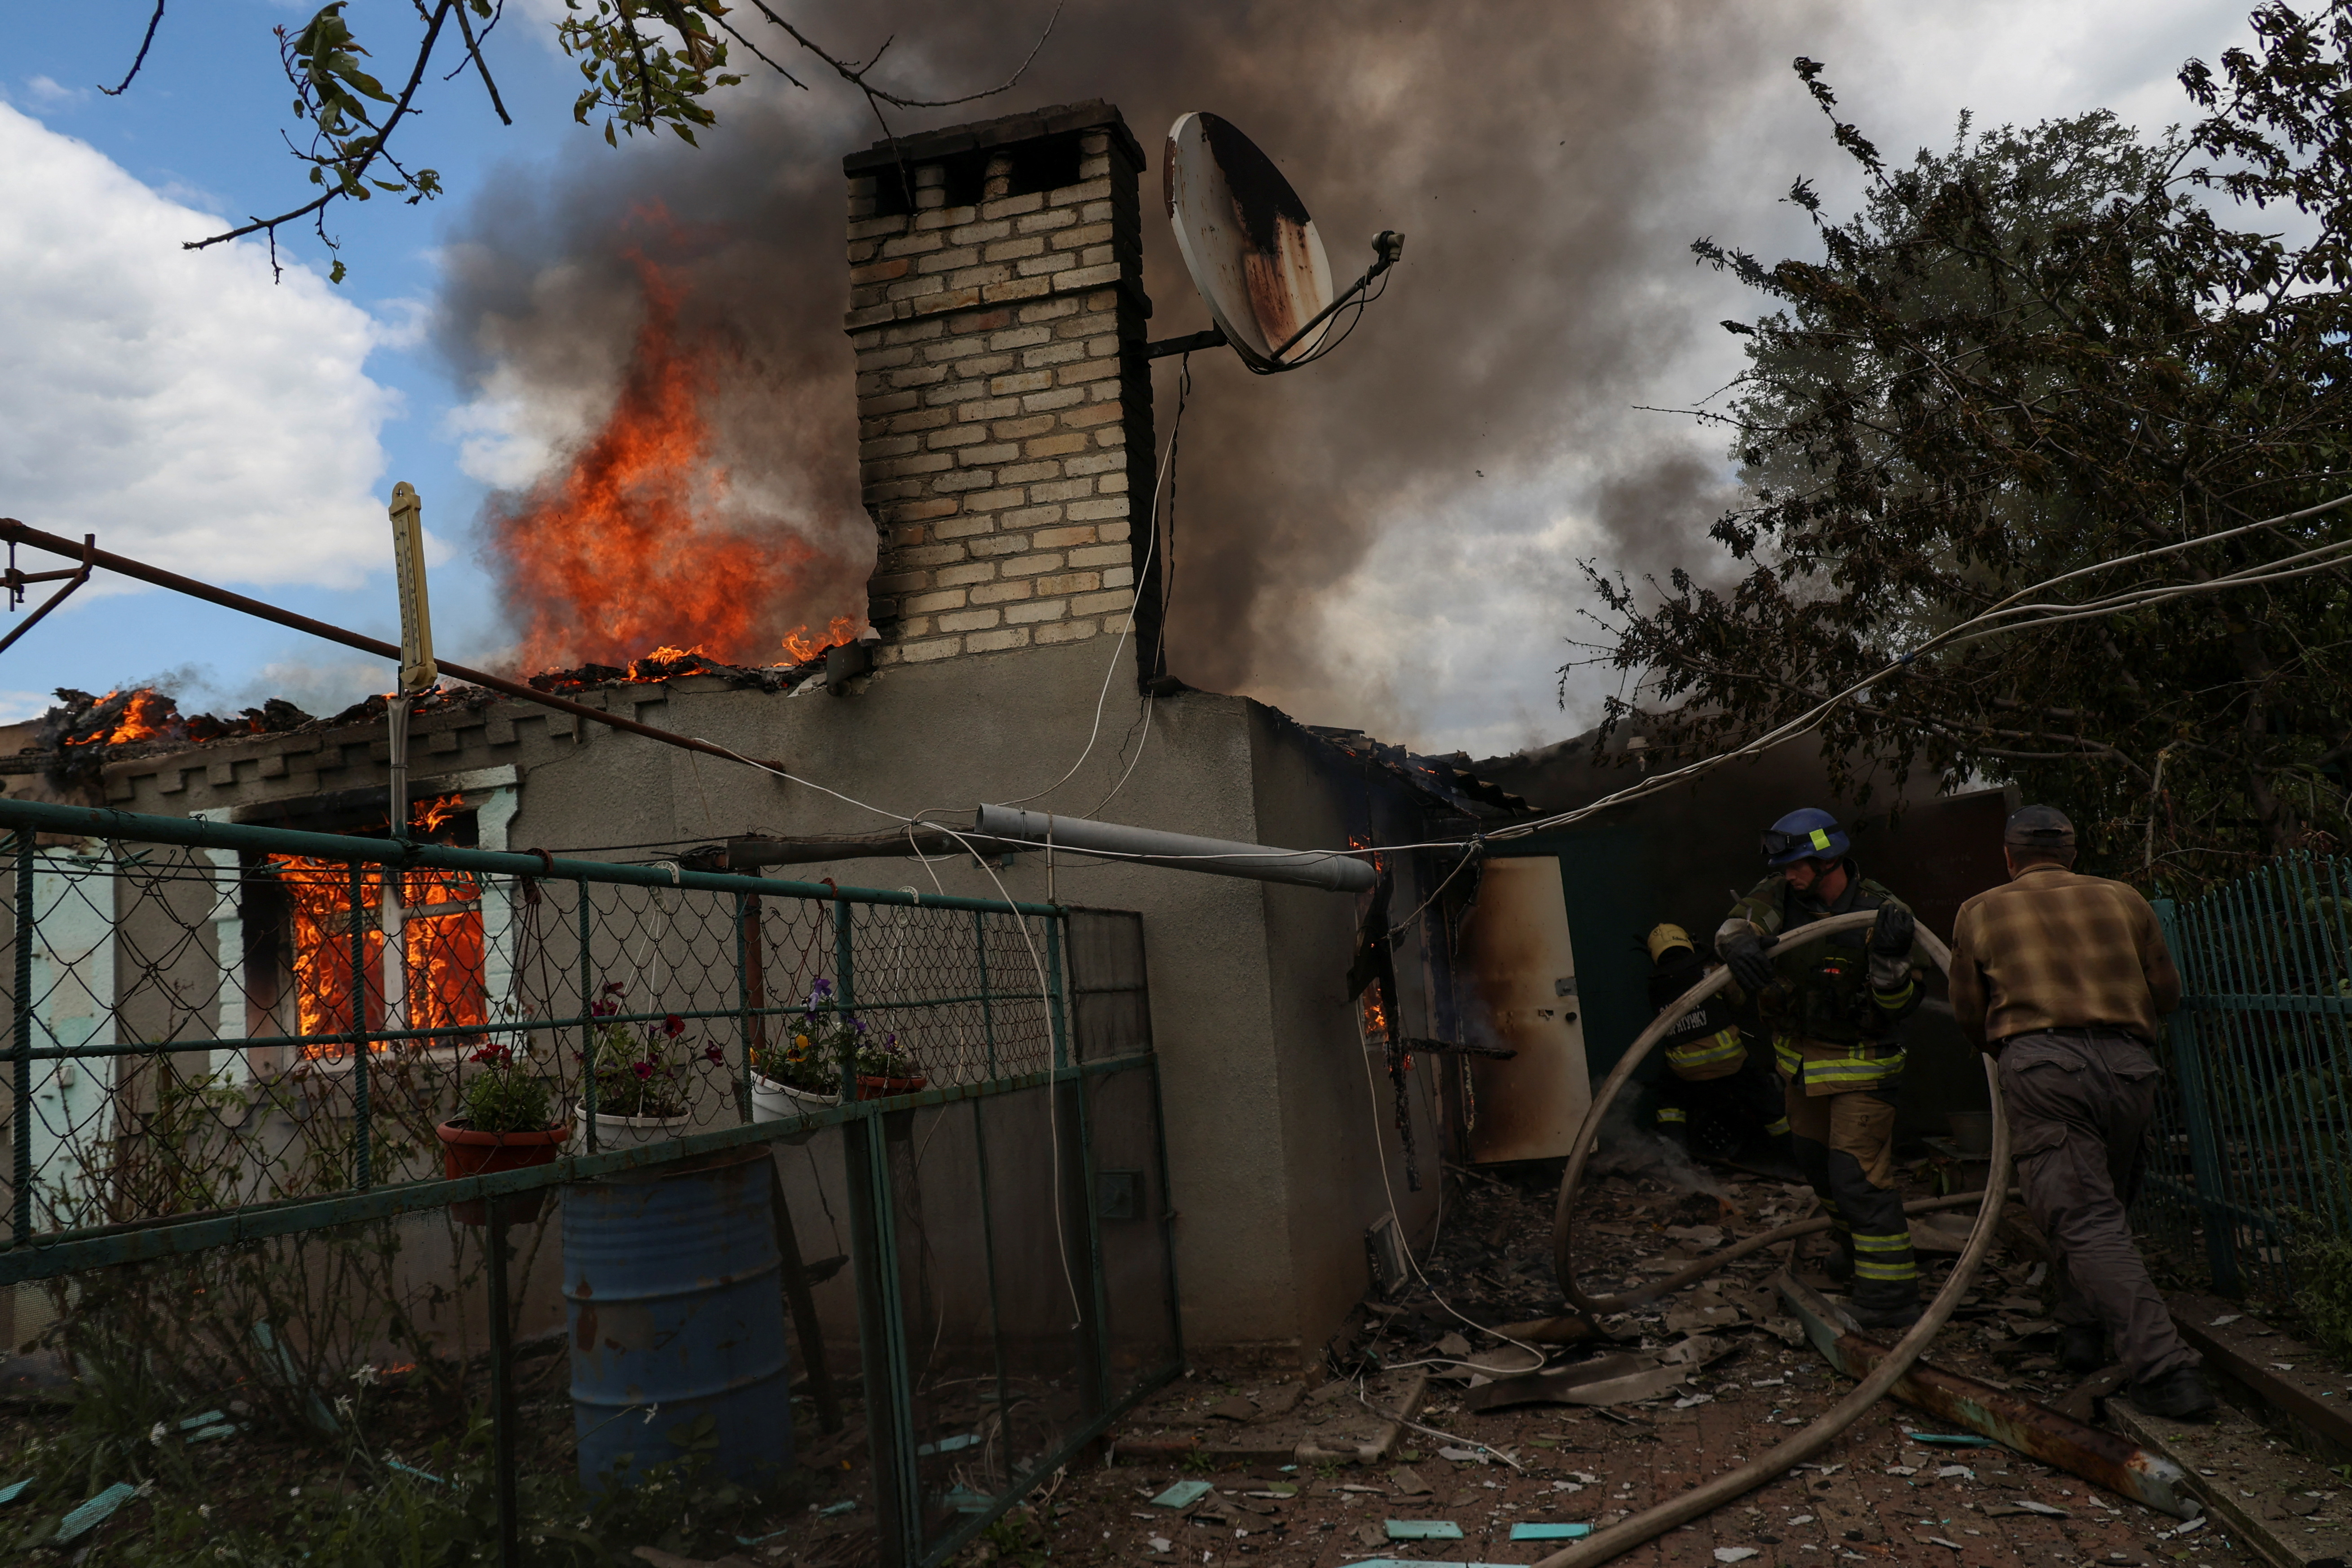 Los bomberos trabajan para extinguir una casa residencial en llamas después de un ataque militar ruso, en Kostiantynivka, región de Donetsk, Ucrania 12 de mayo 2023. REUTERS/Sofiia Gatilova